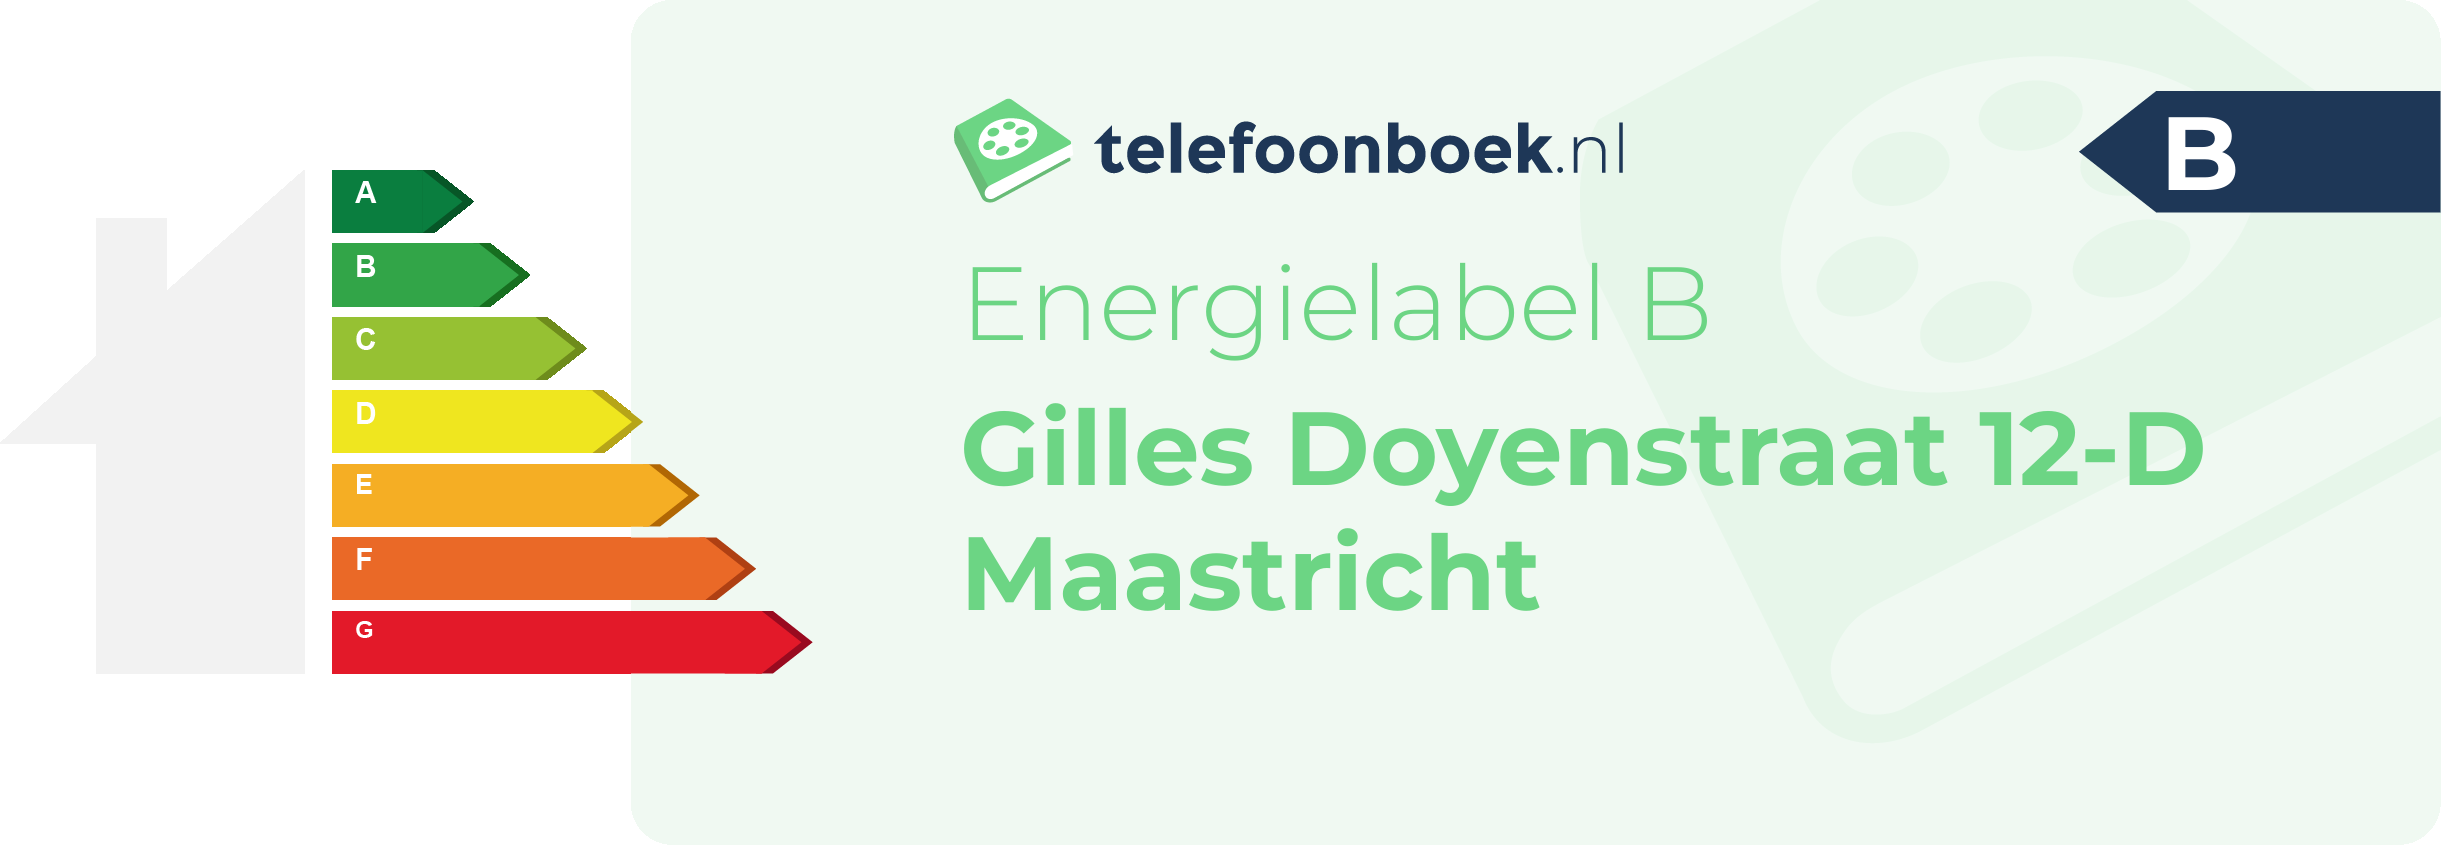 Energielabel Gilles Doyenstraat 12-D Maastricht